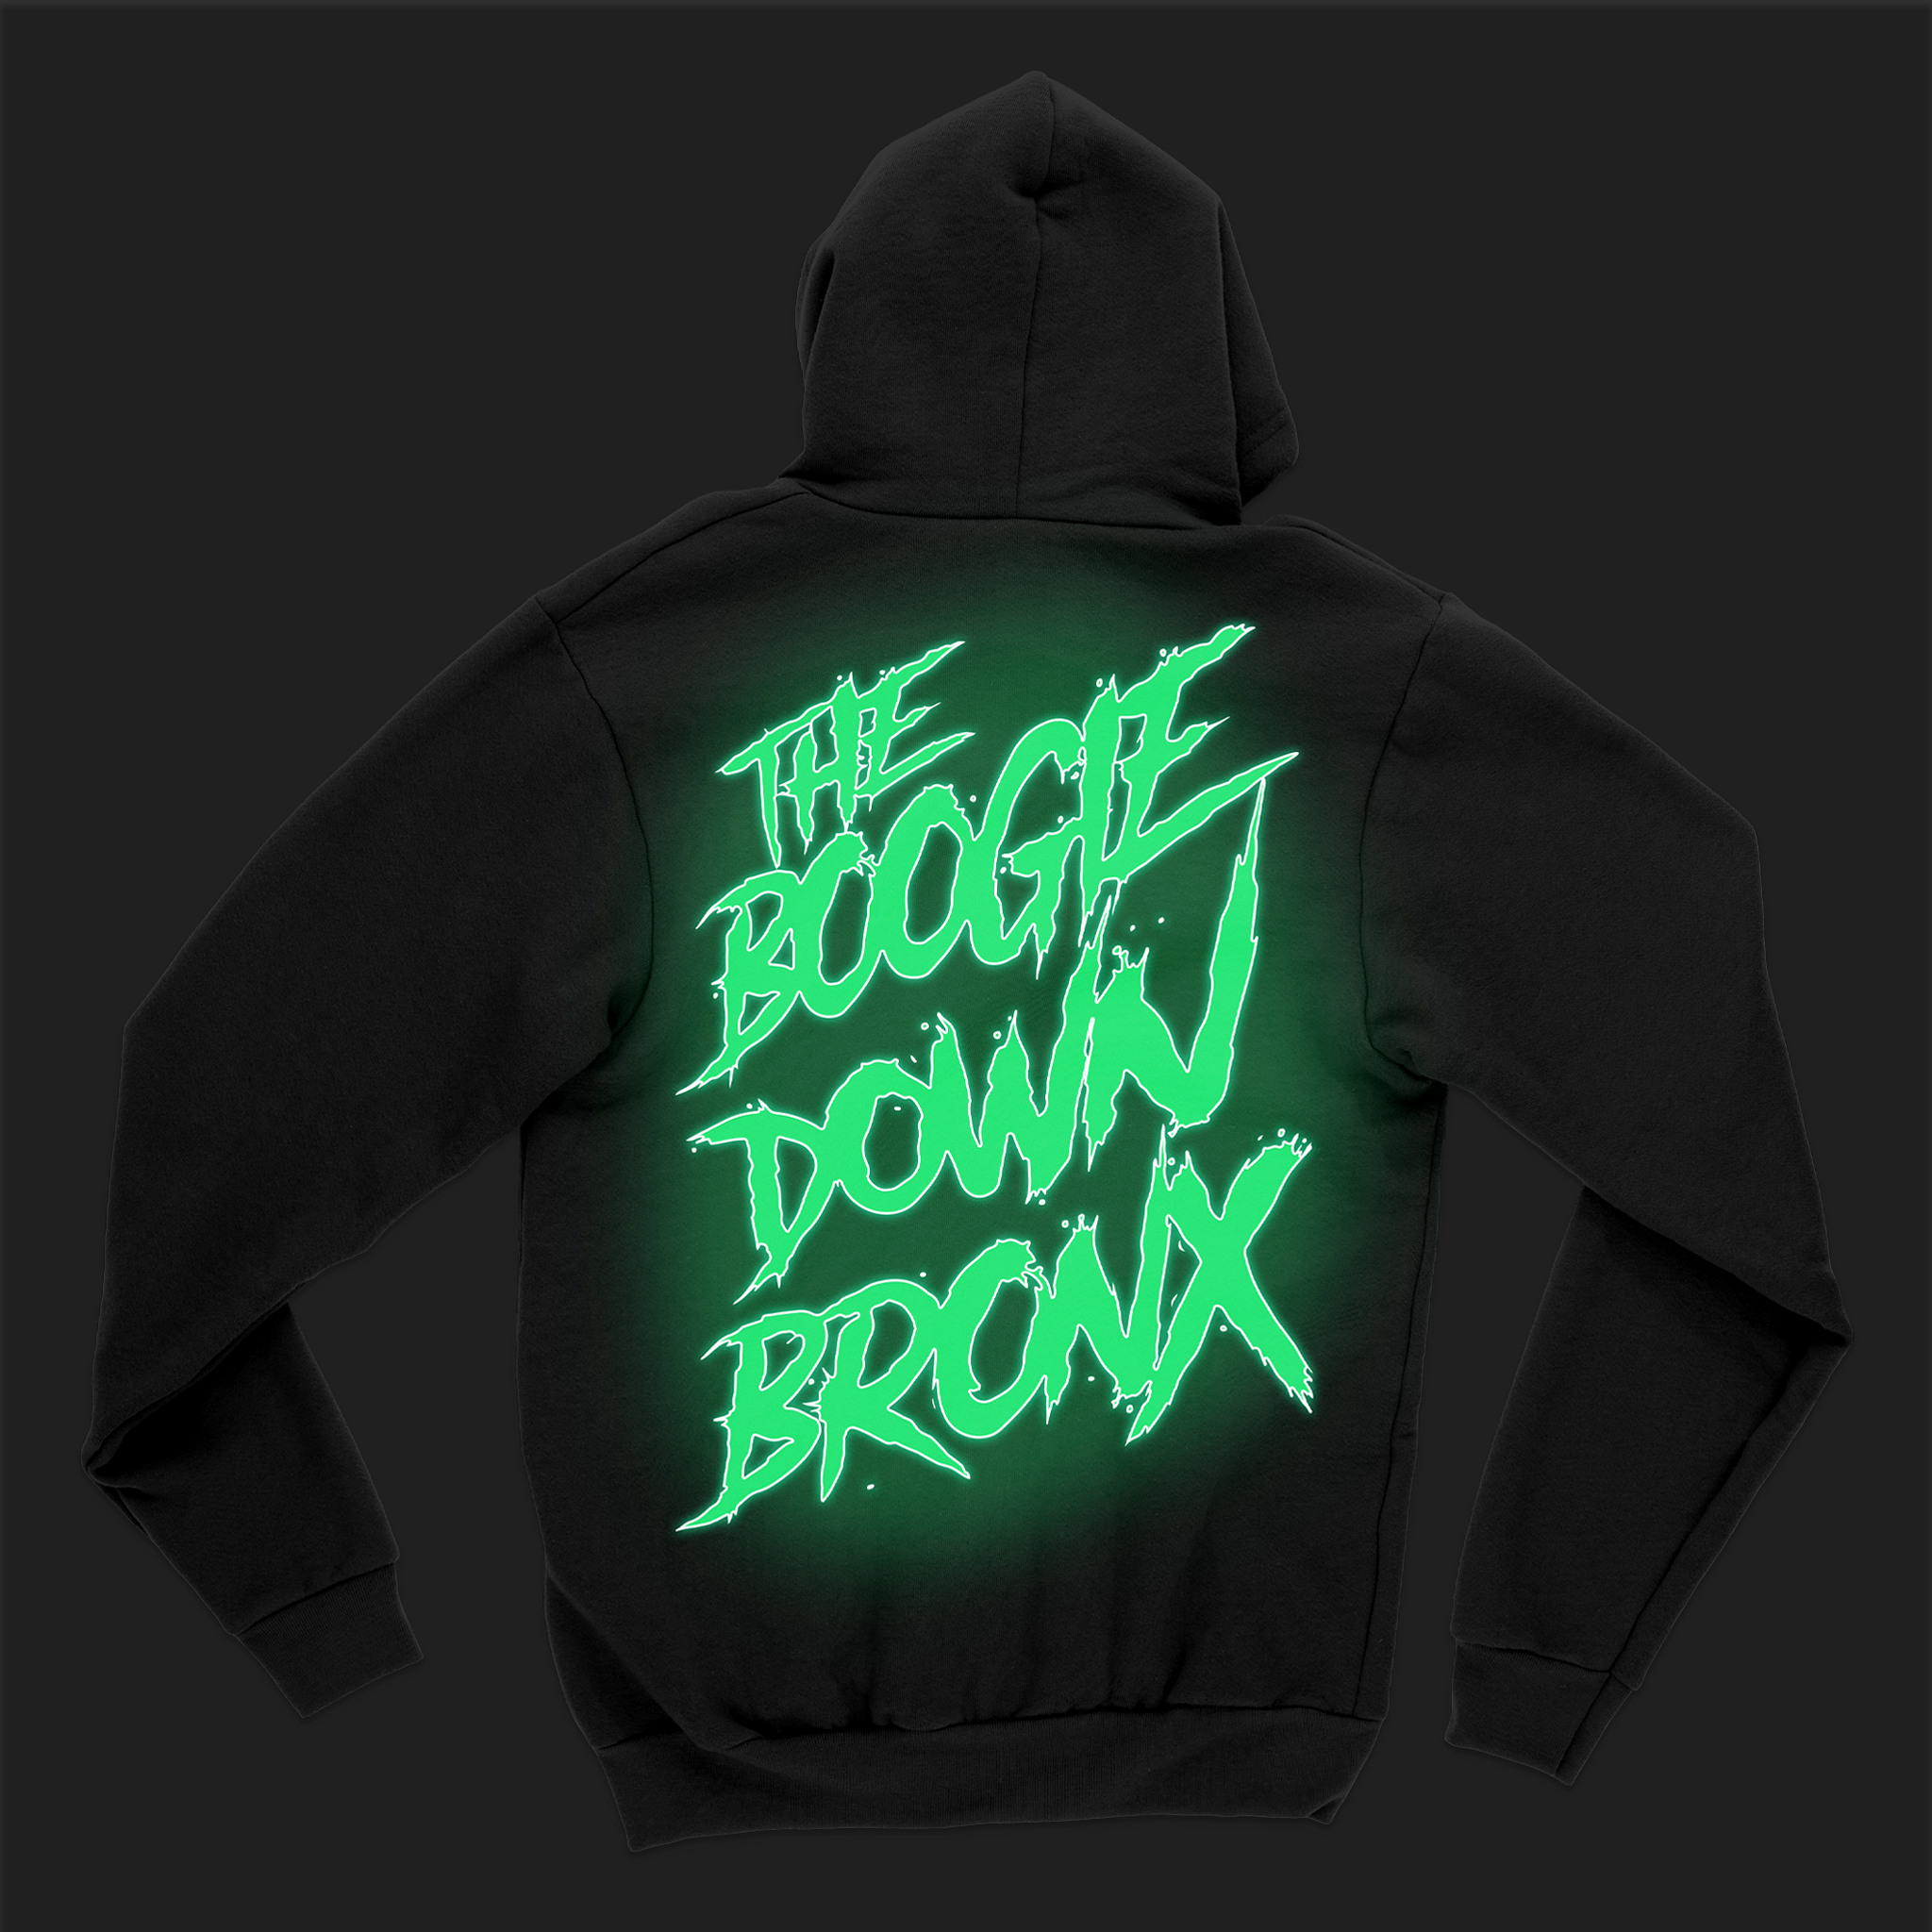 Boogie Down Bronx Zip Up Hoodie Back in Black with Glow in the Dark Print Glowing